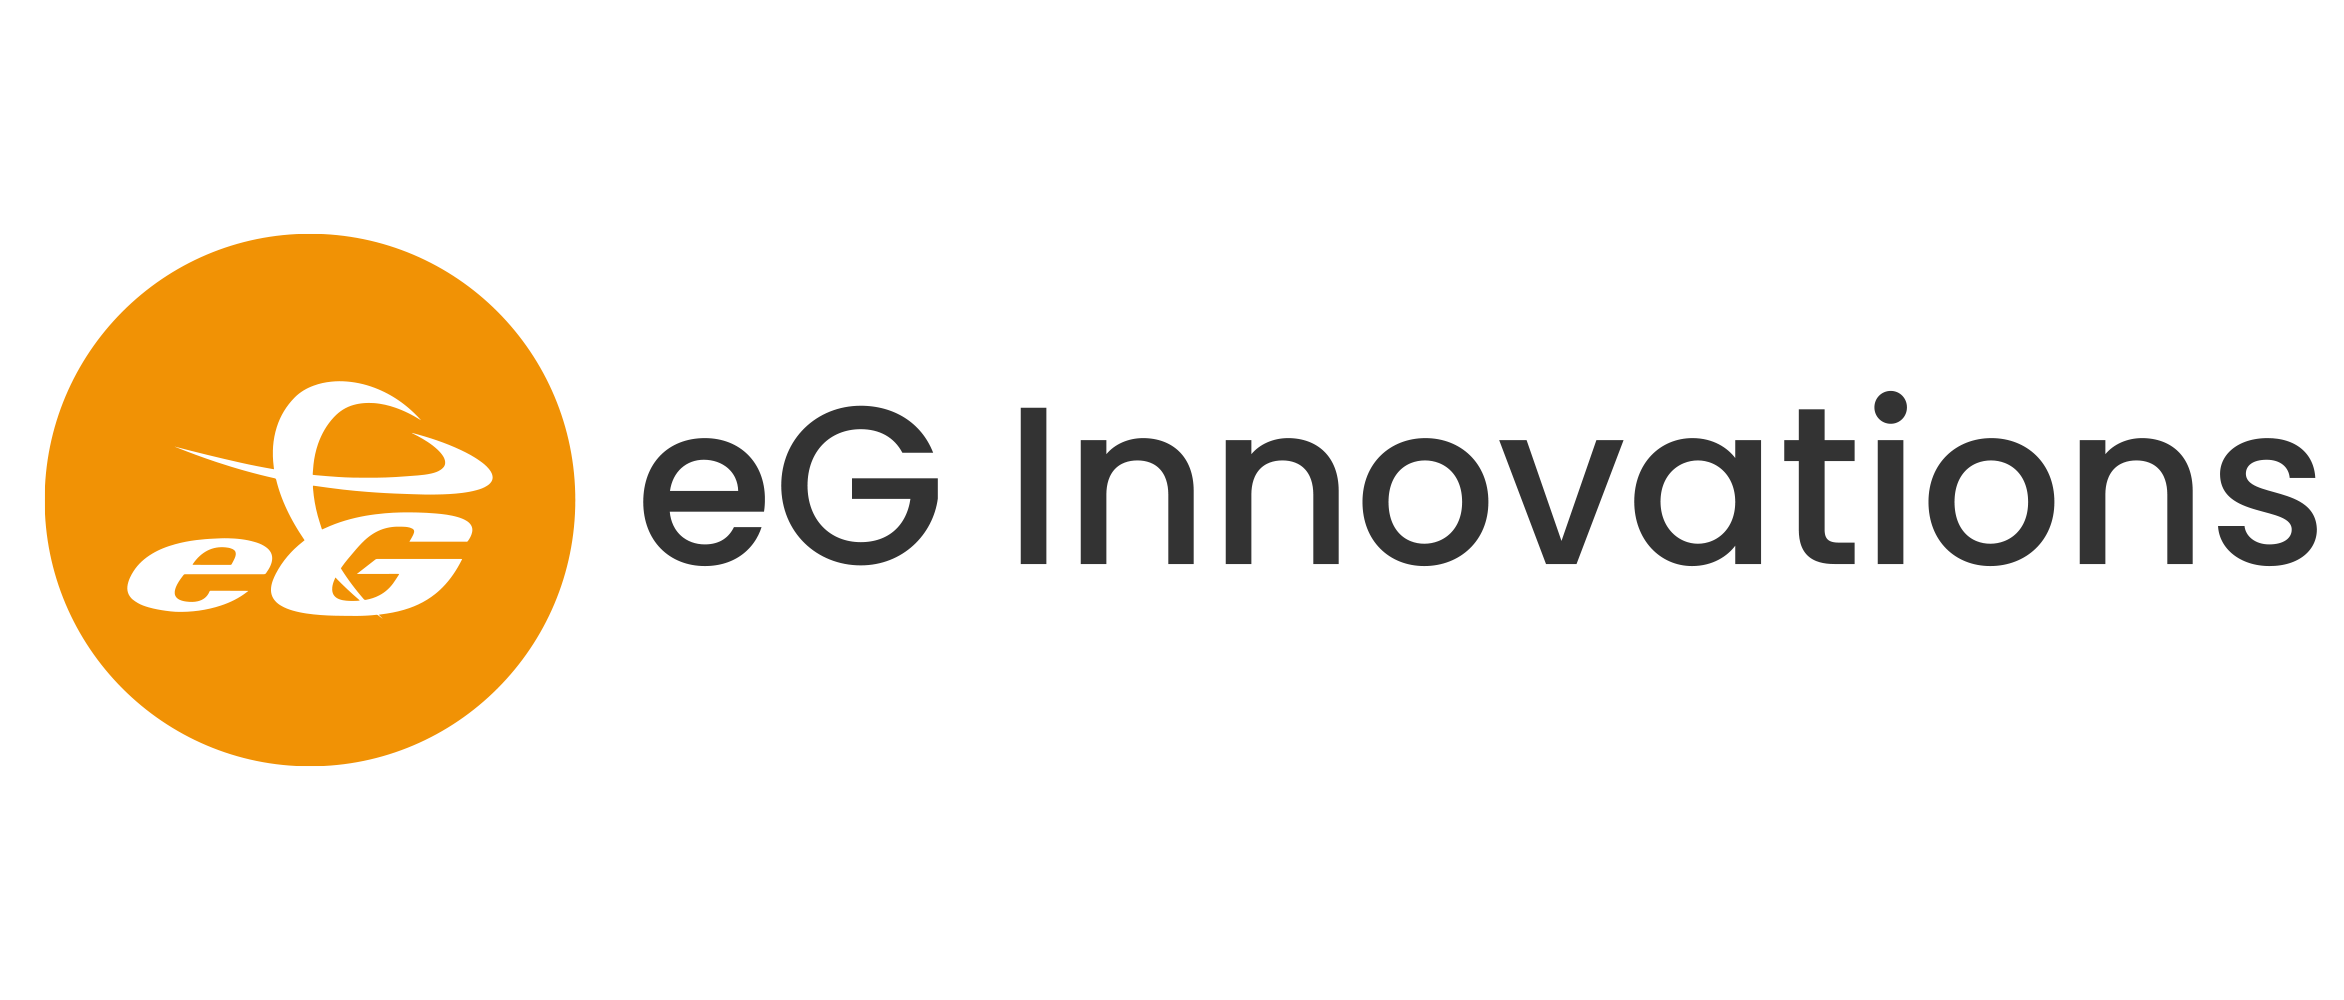 eG Innovations Pte Ltd in Elioplus